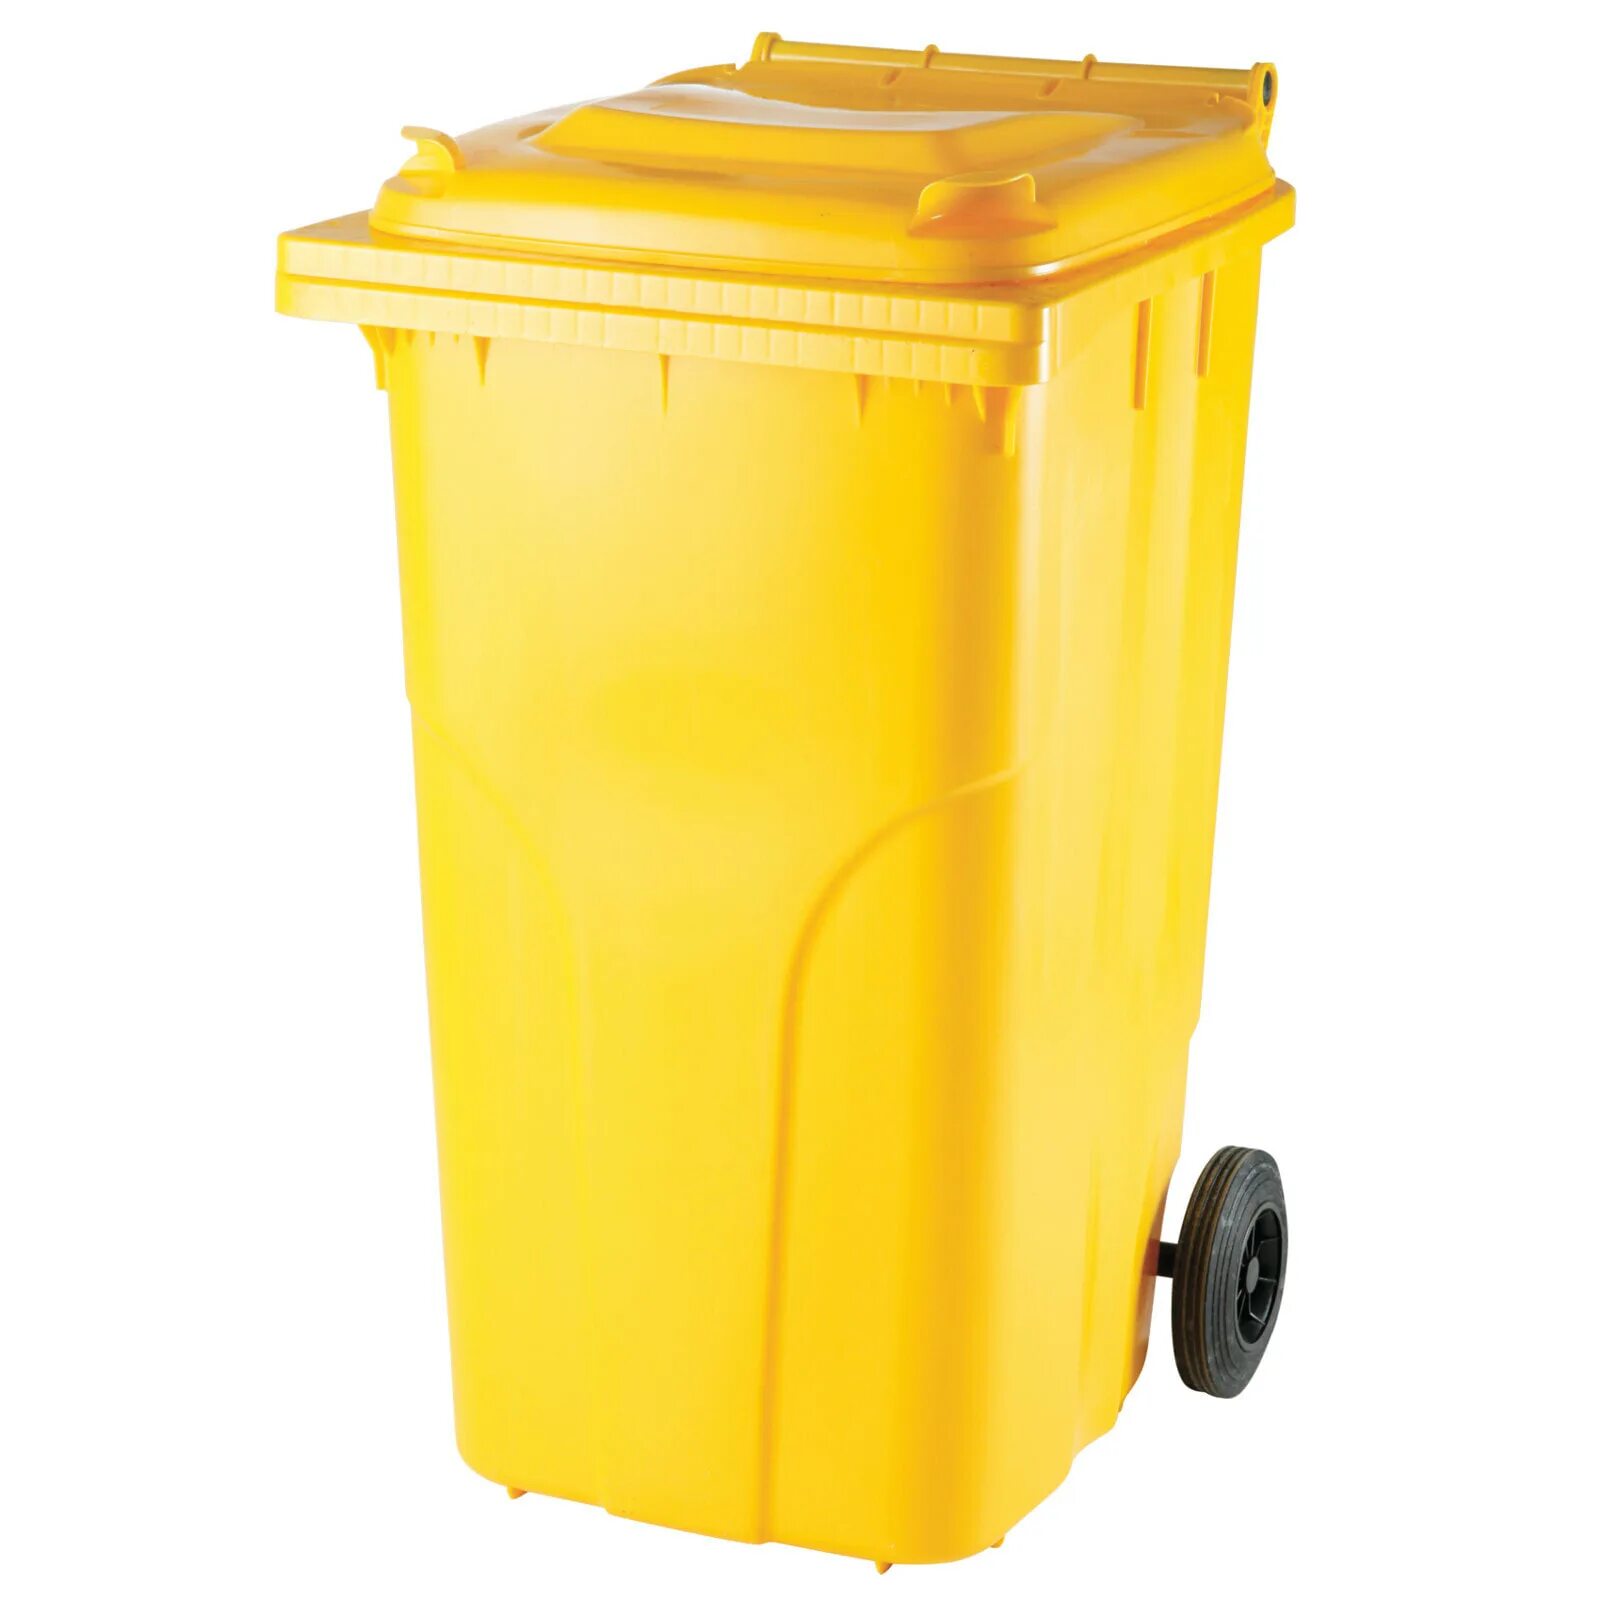 Бак для сбора медицинских отходов. Бак для отходов пластиковый 120л желтый. Контейнер мусорный 240л желтый МКТ. Бак для ТБО 240 Л. Контейнер внутрикорпусной 120 л МКТ-120 С педалью.